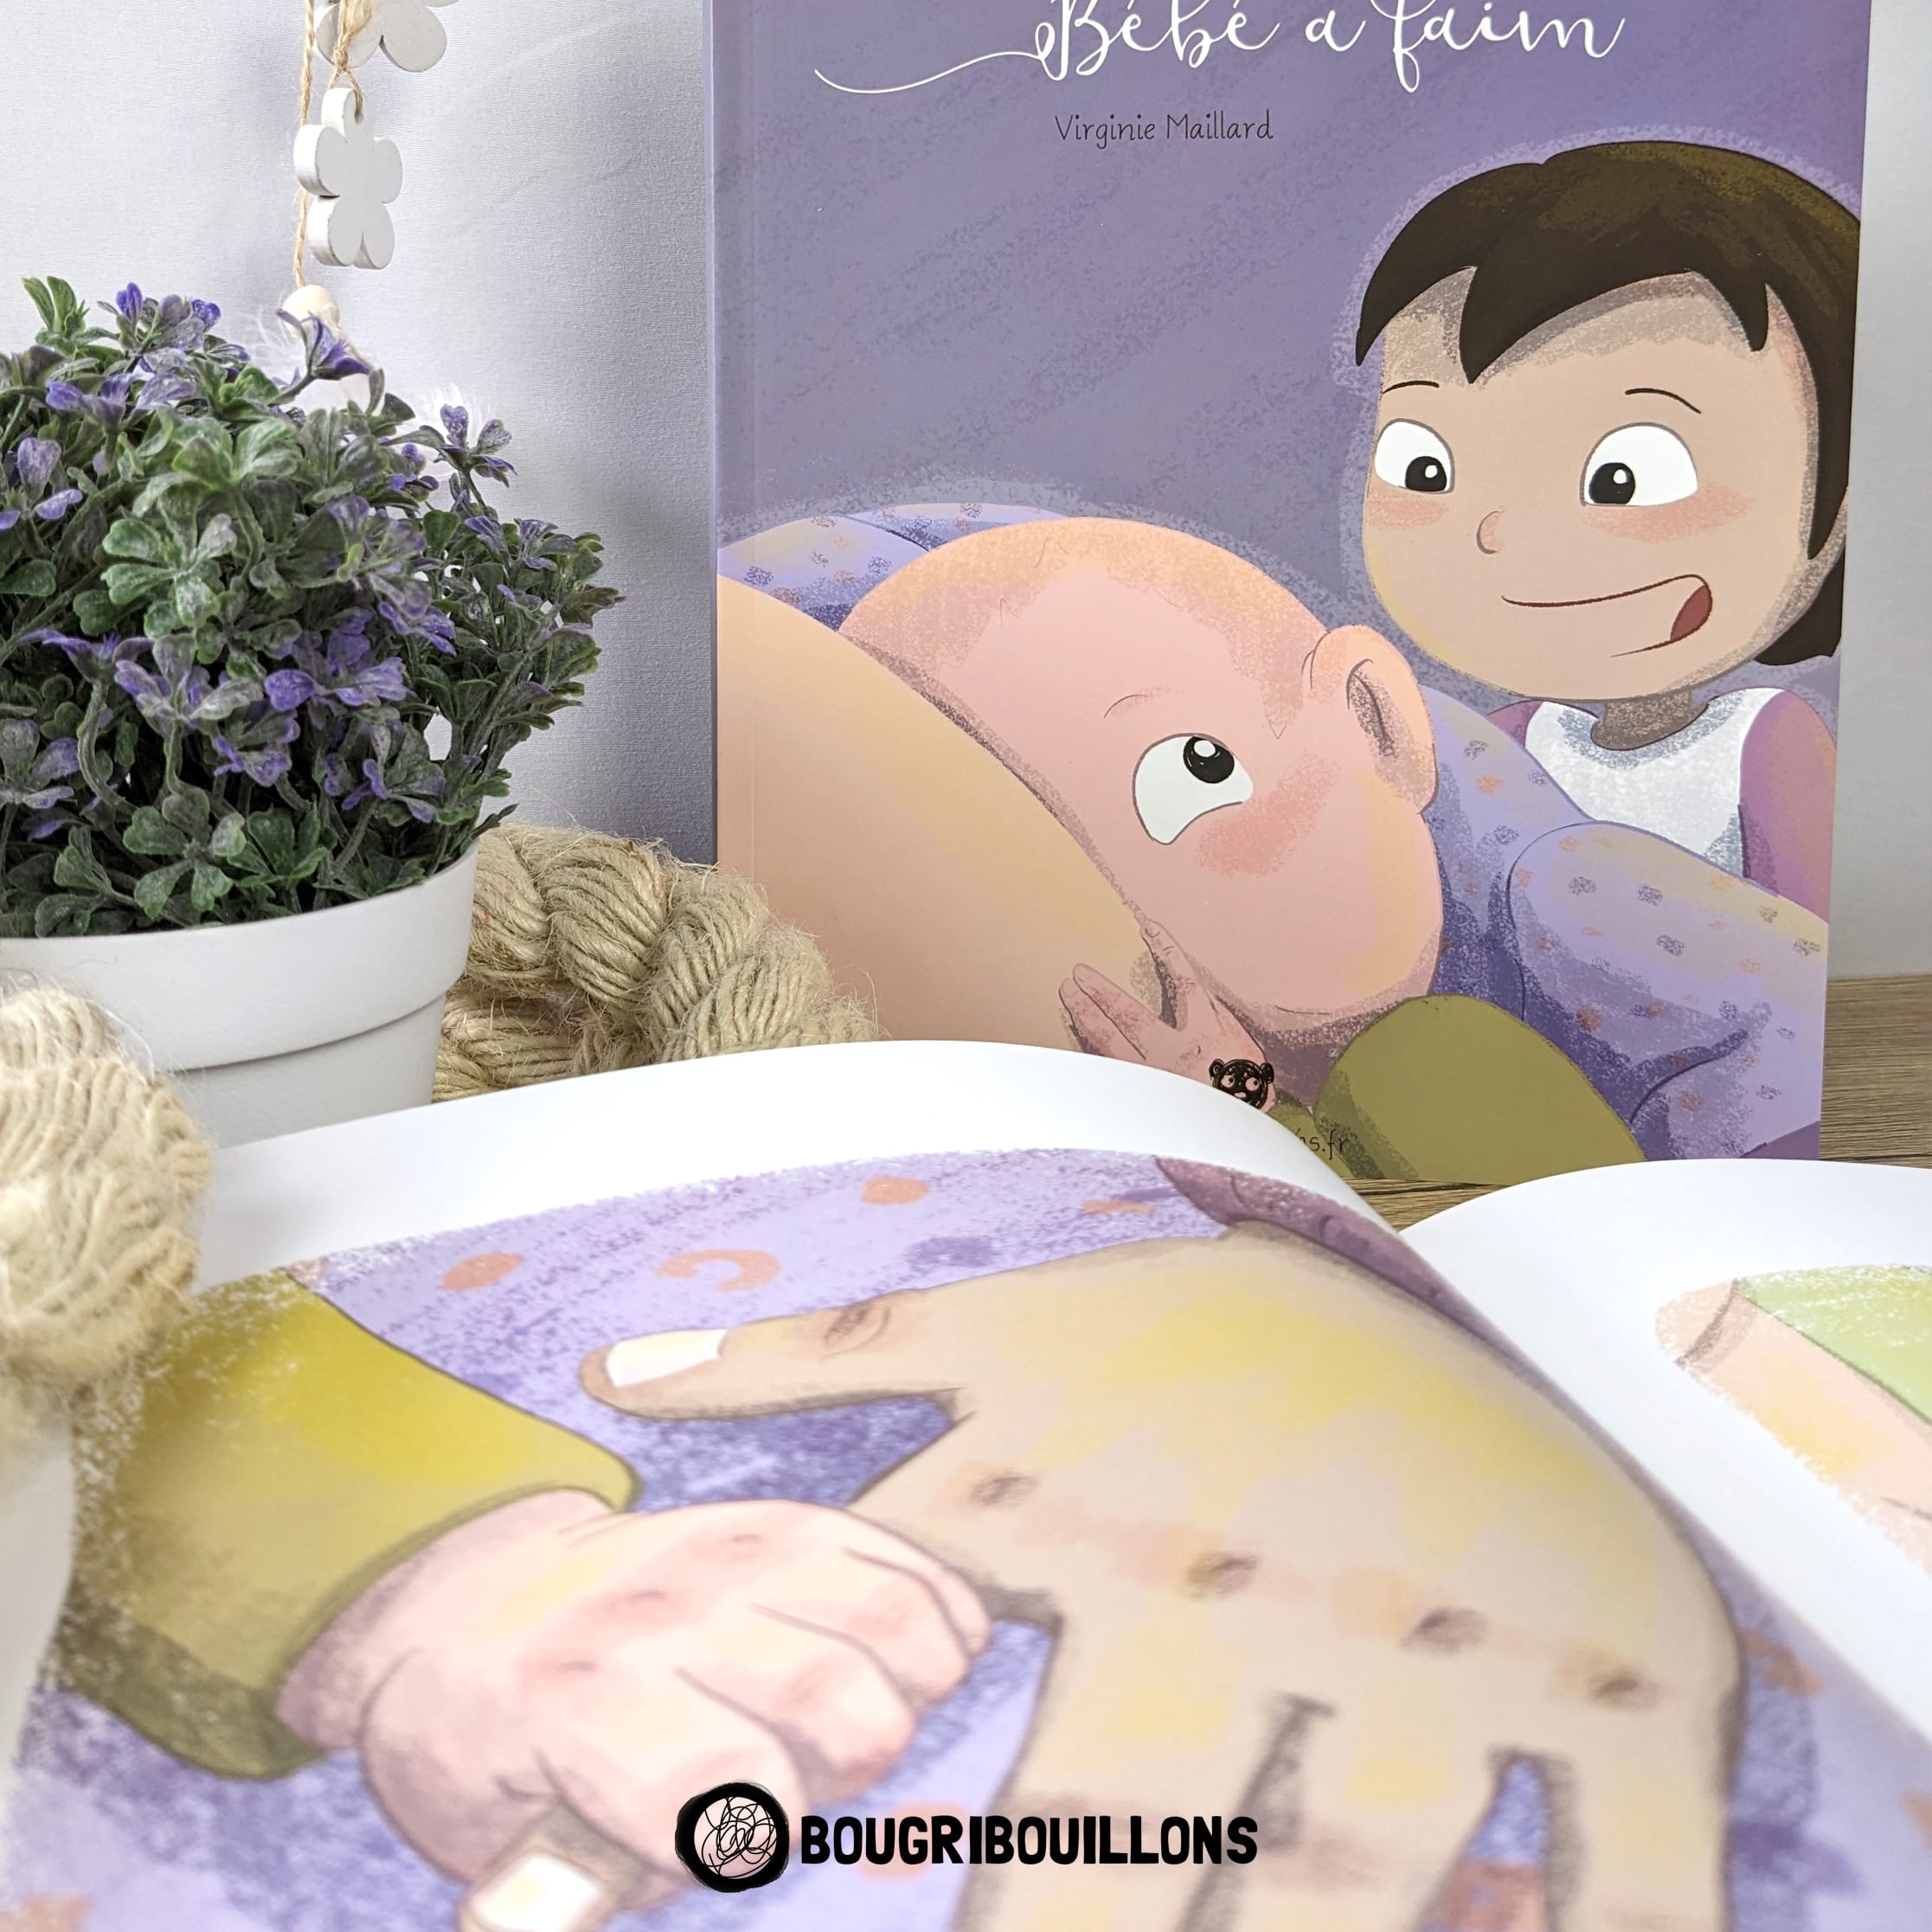 Album jeunesse "Bébé a faim" de Virginie Maillard - Un livre pour enfant qui parle d'allaitement